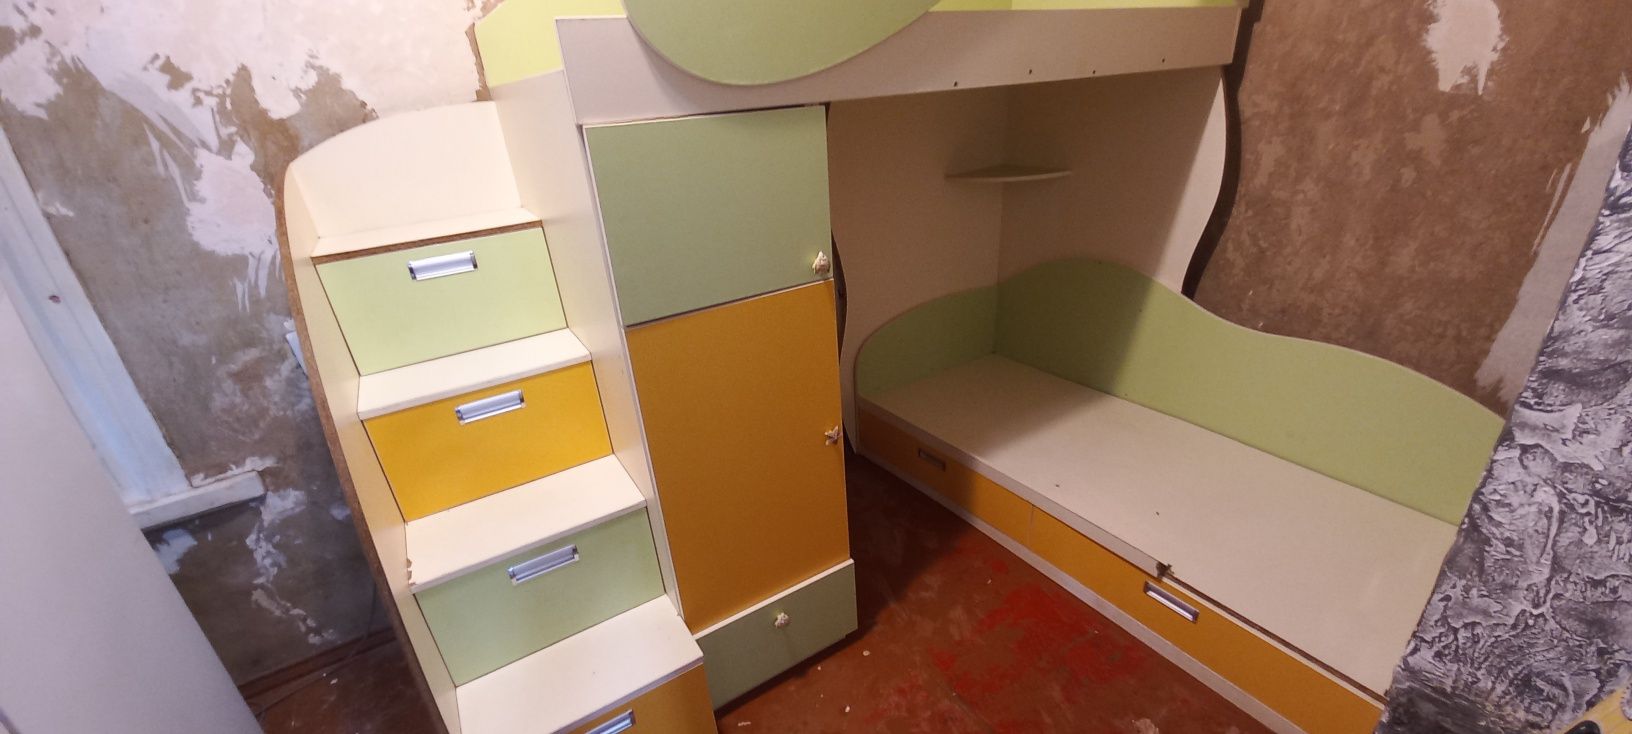 Детская двухетажная кровать со встроенными шкафами